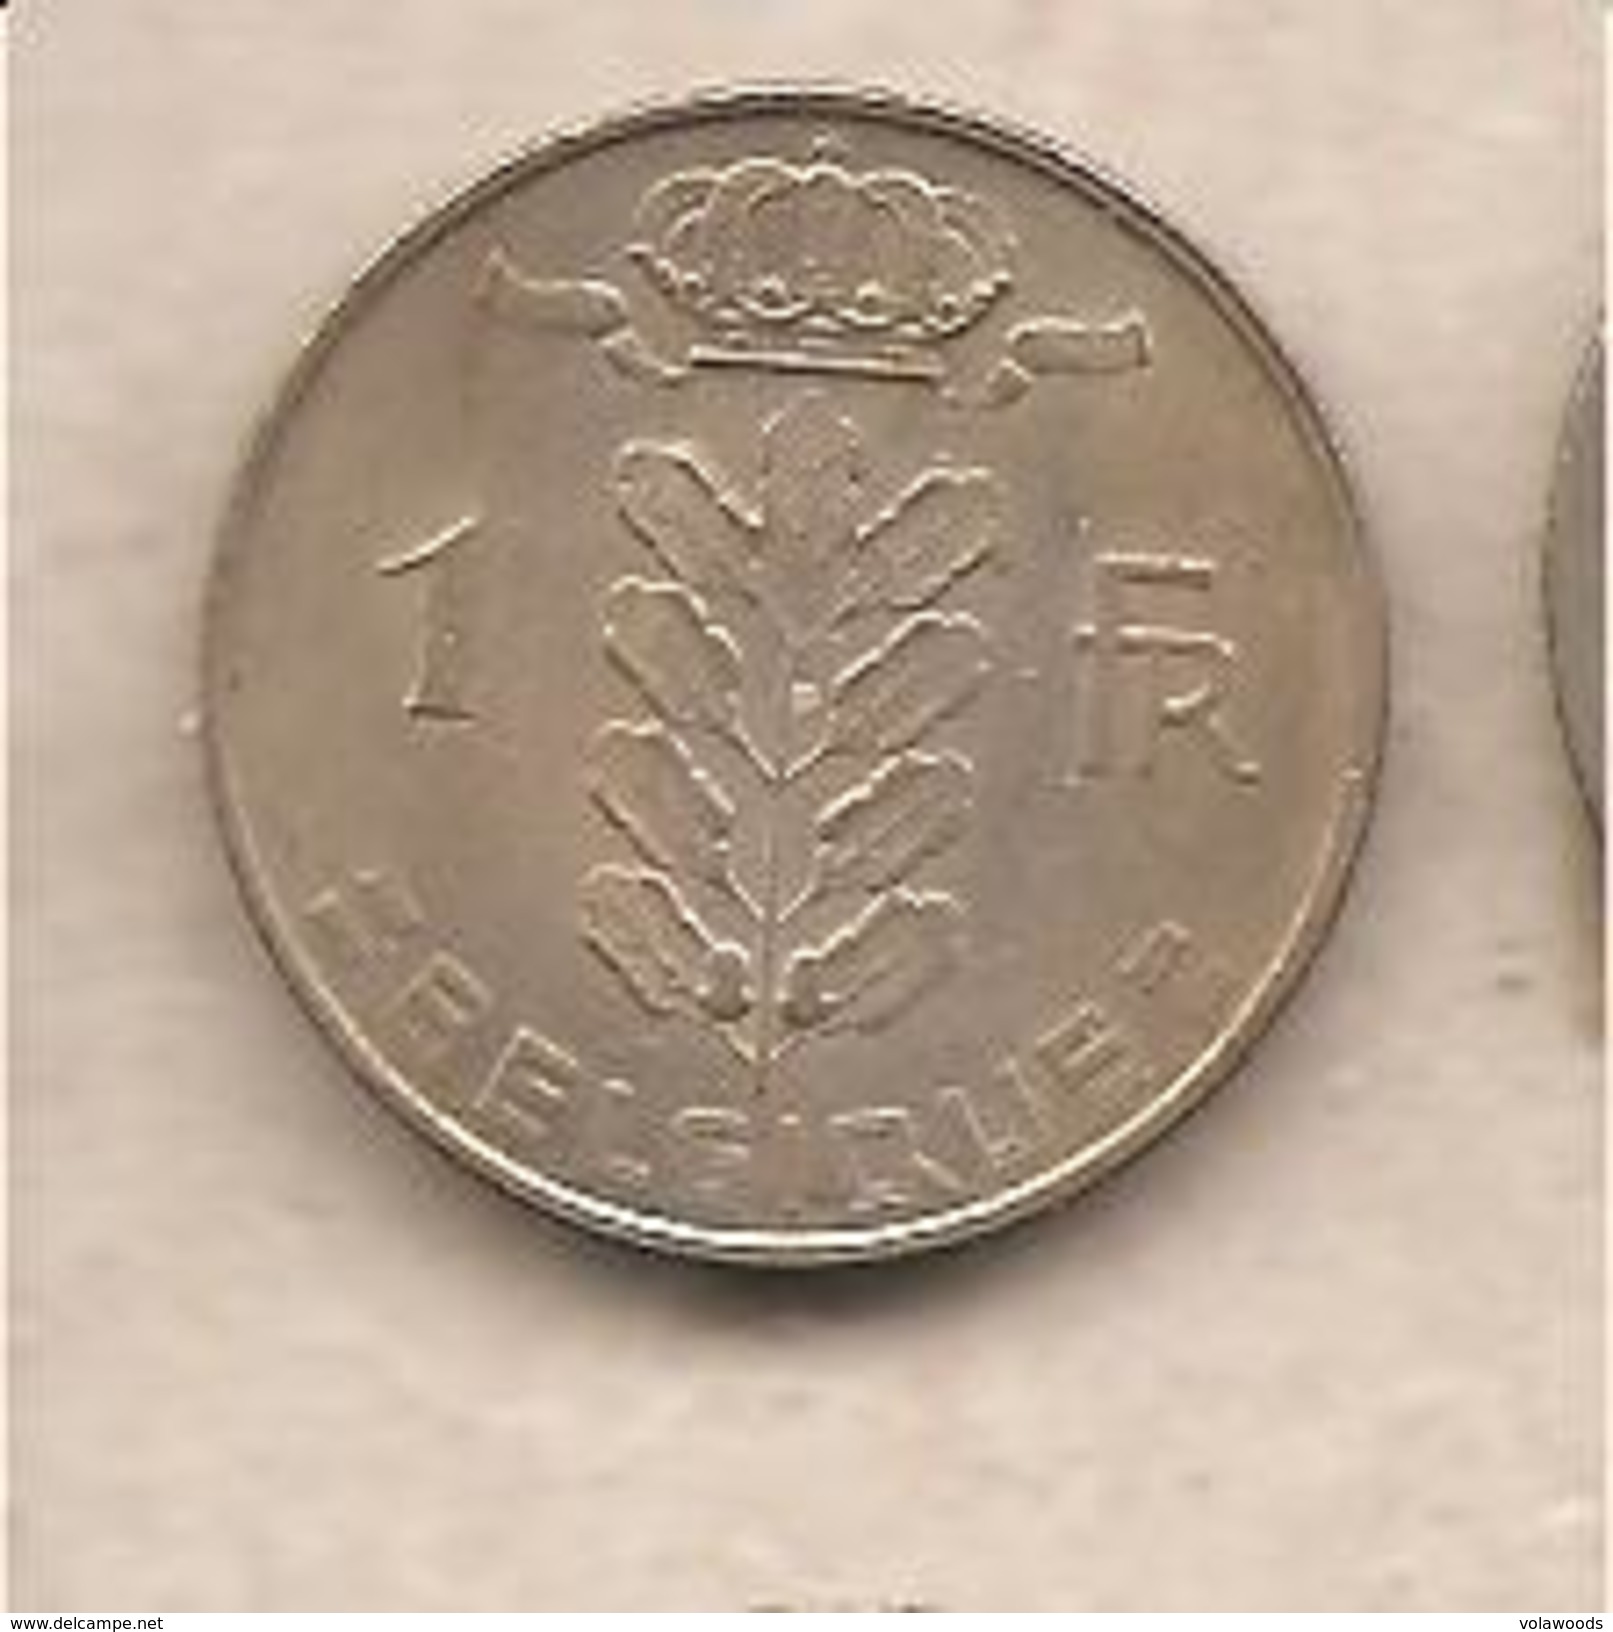 Belgio - Moneta Circolata Da 1 Franco Km142.1 - 1970 - 1 Franc